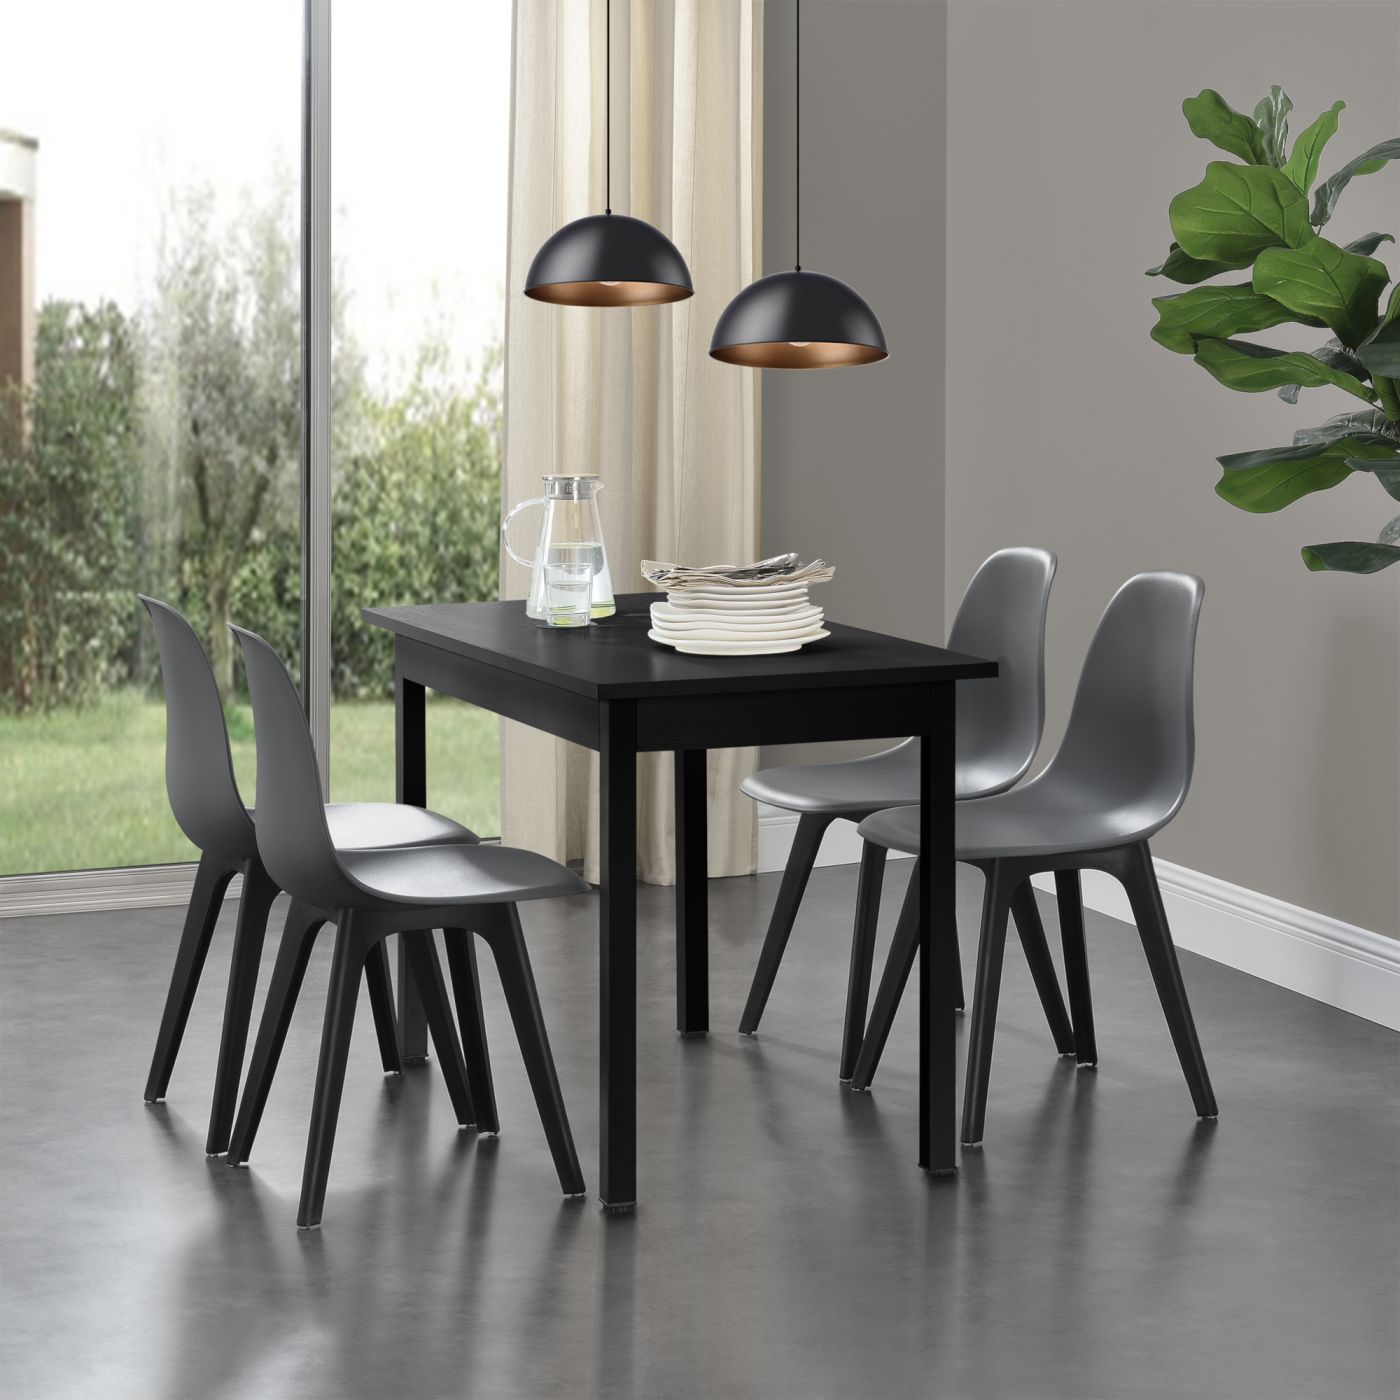 en.casa] Set de 2 Chaises Design Chaise de Cuisine Chaise de Salle à Manger  Plastique Gris et Noir 83 x 54 x 48 cm